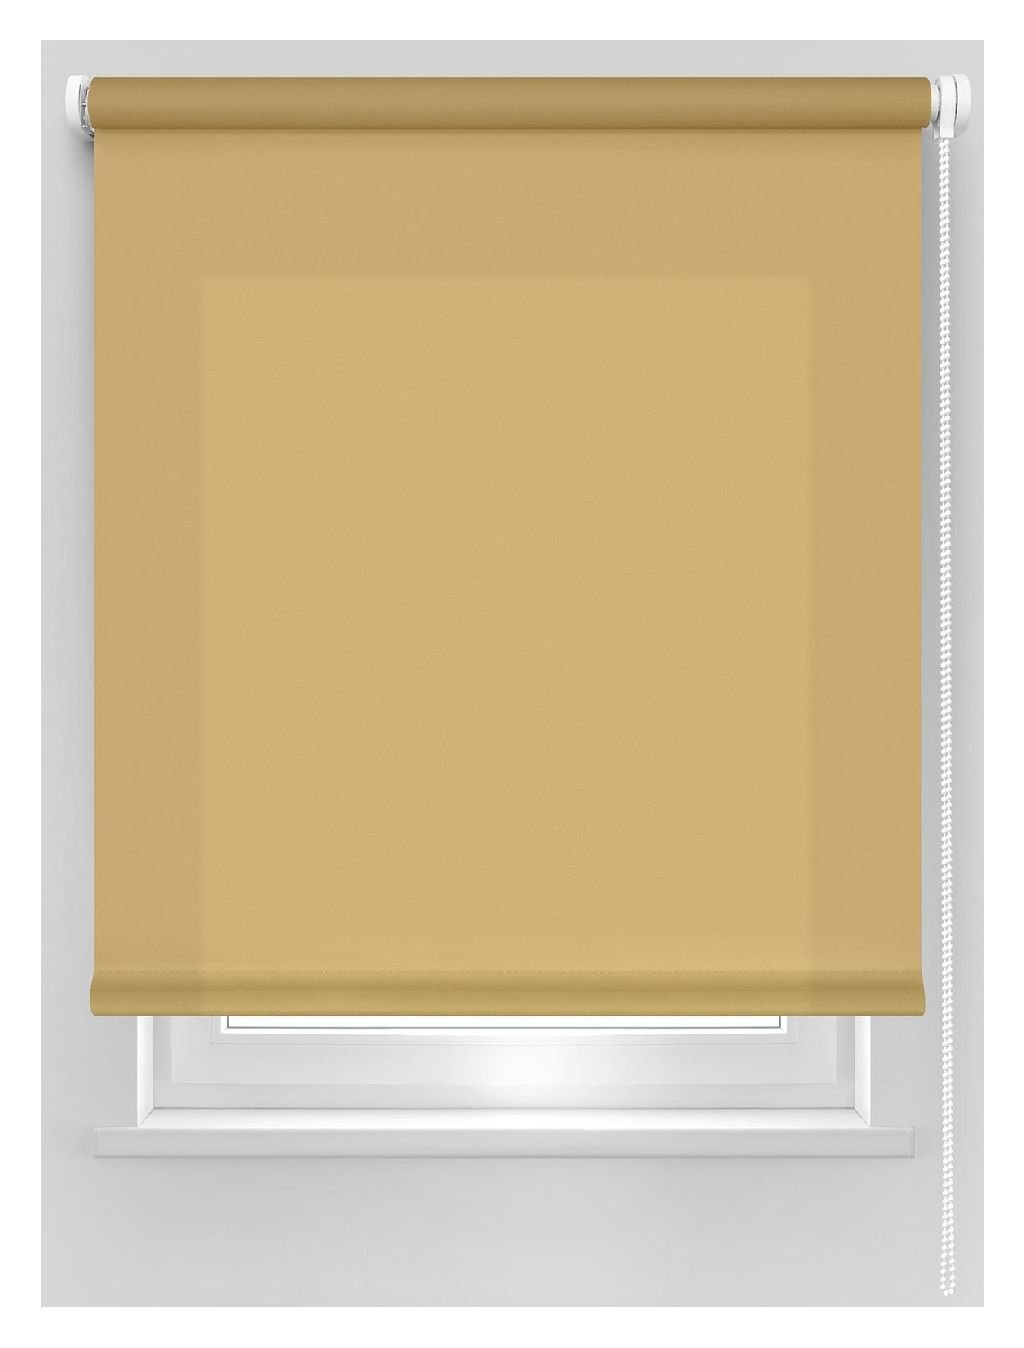 Klasikinė ritininė užuolaida DEKORIKA, šv. rudos sp., Ø 25 mm, 240 x 175 cm, 100 % PES